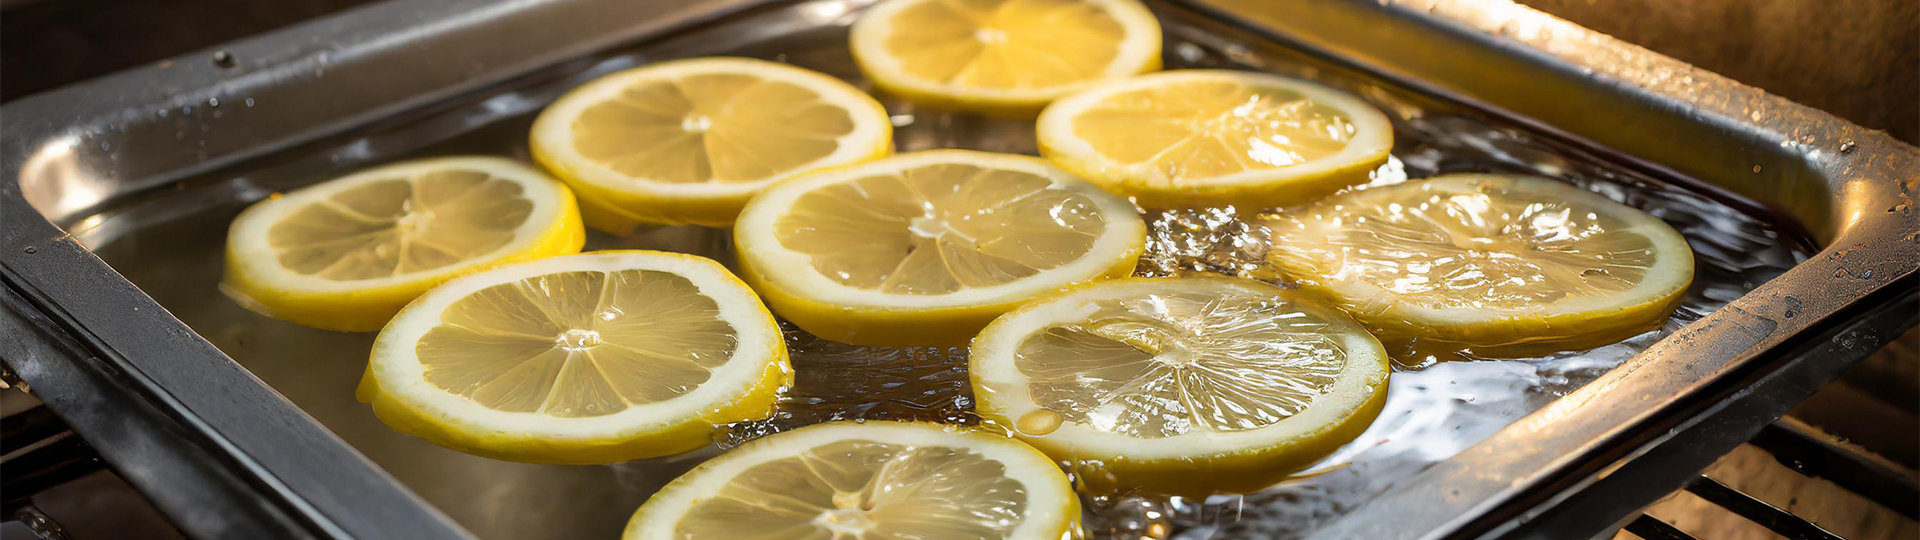 rengøring af ovn med citroner